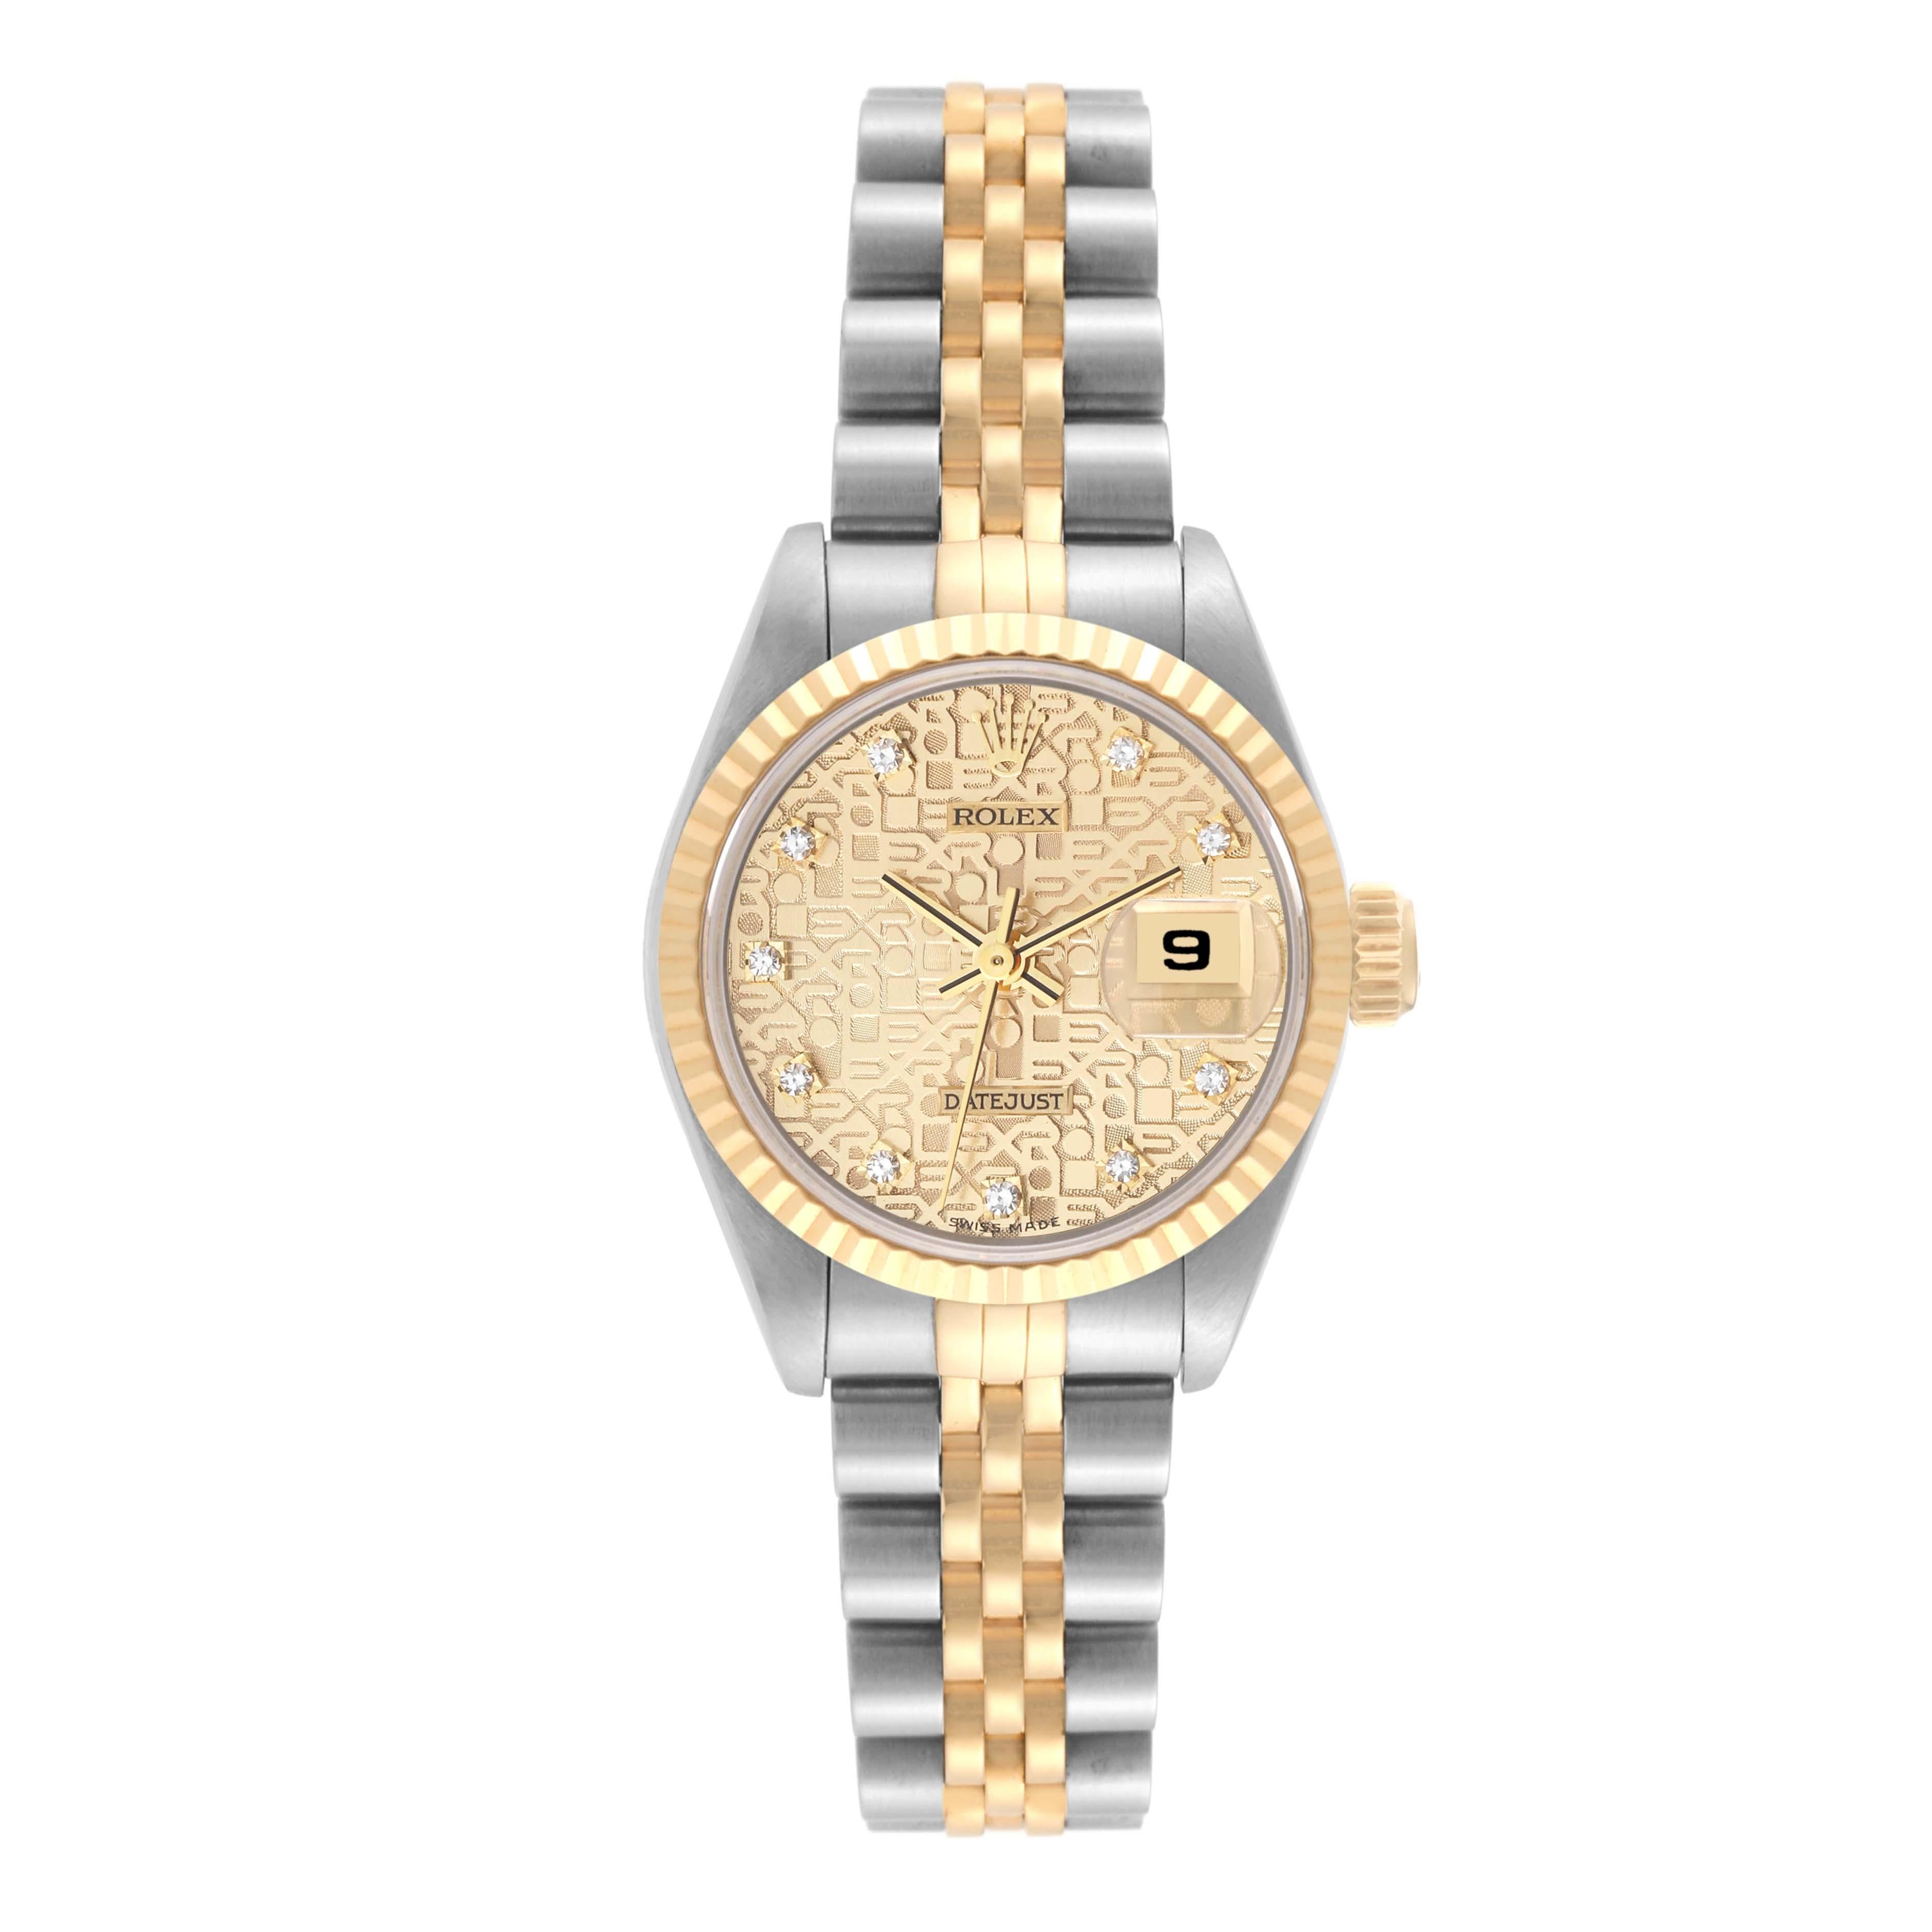 Rolex Datejust Anniversary Diamond Dial Steel Yellow Gold Ladies Watch 69173. Mouvement automatique à remontage automatique, officiellement certifié chronomètre. Boîtier oyster en acier inoxydable de 26.0 mm de diamètre. Logo Rolex sur la couronne.